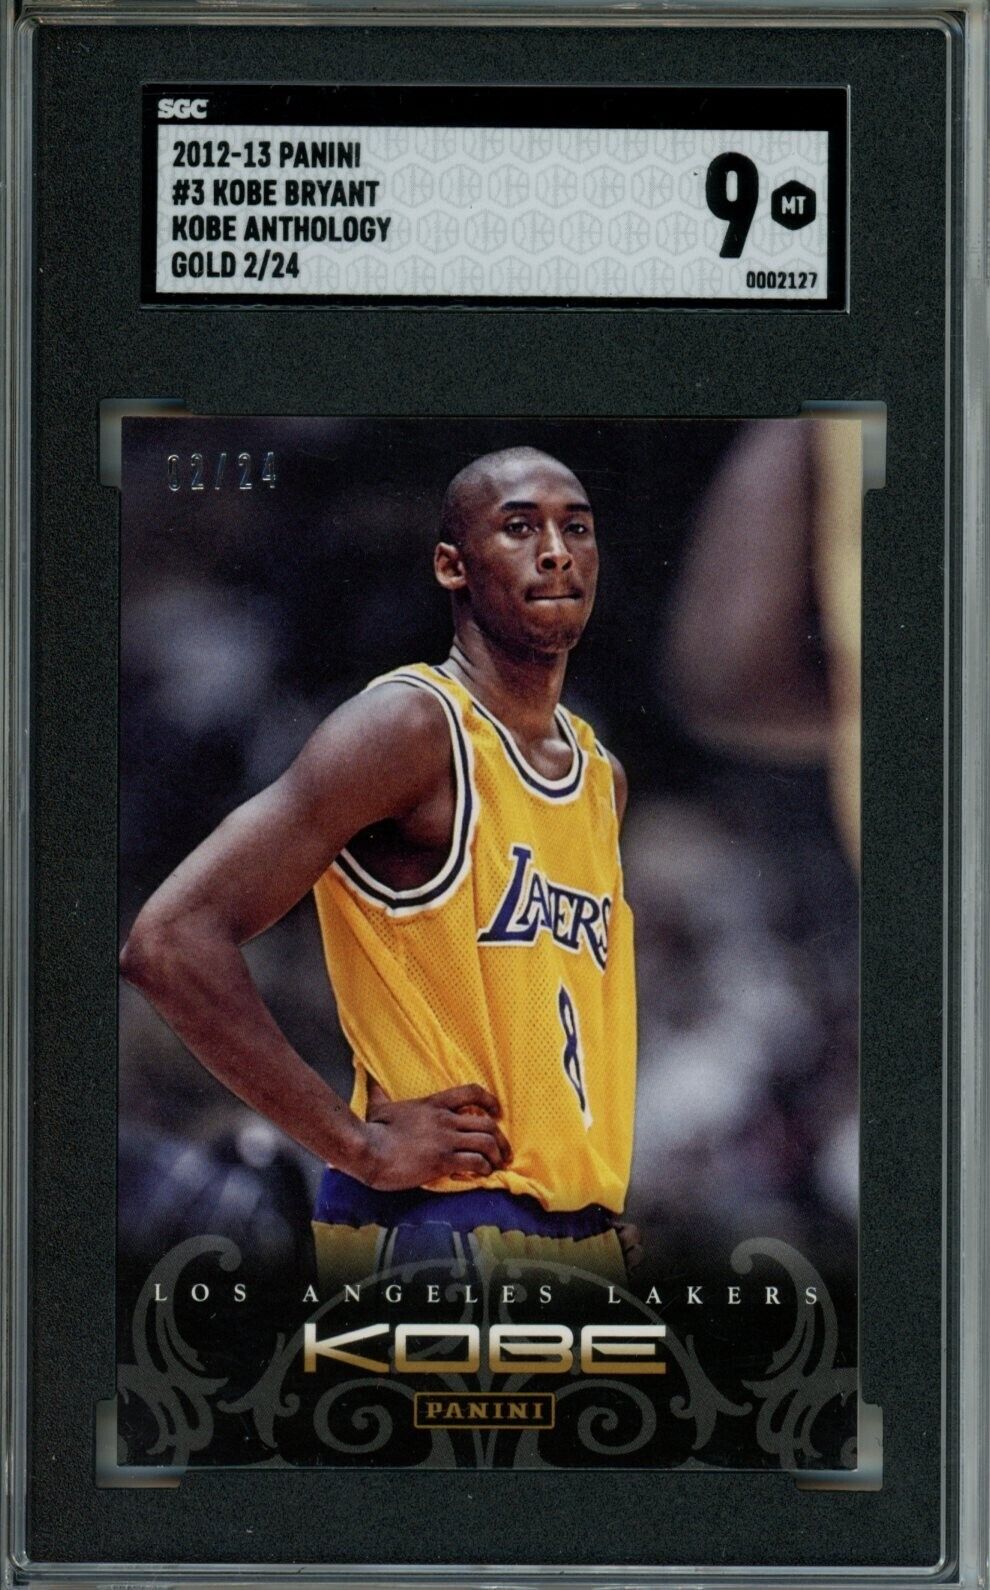 Kobe Bryant 2012-13 Panini Kobe Anthology #3 Los Angeles Lakers Gold /24